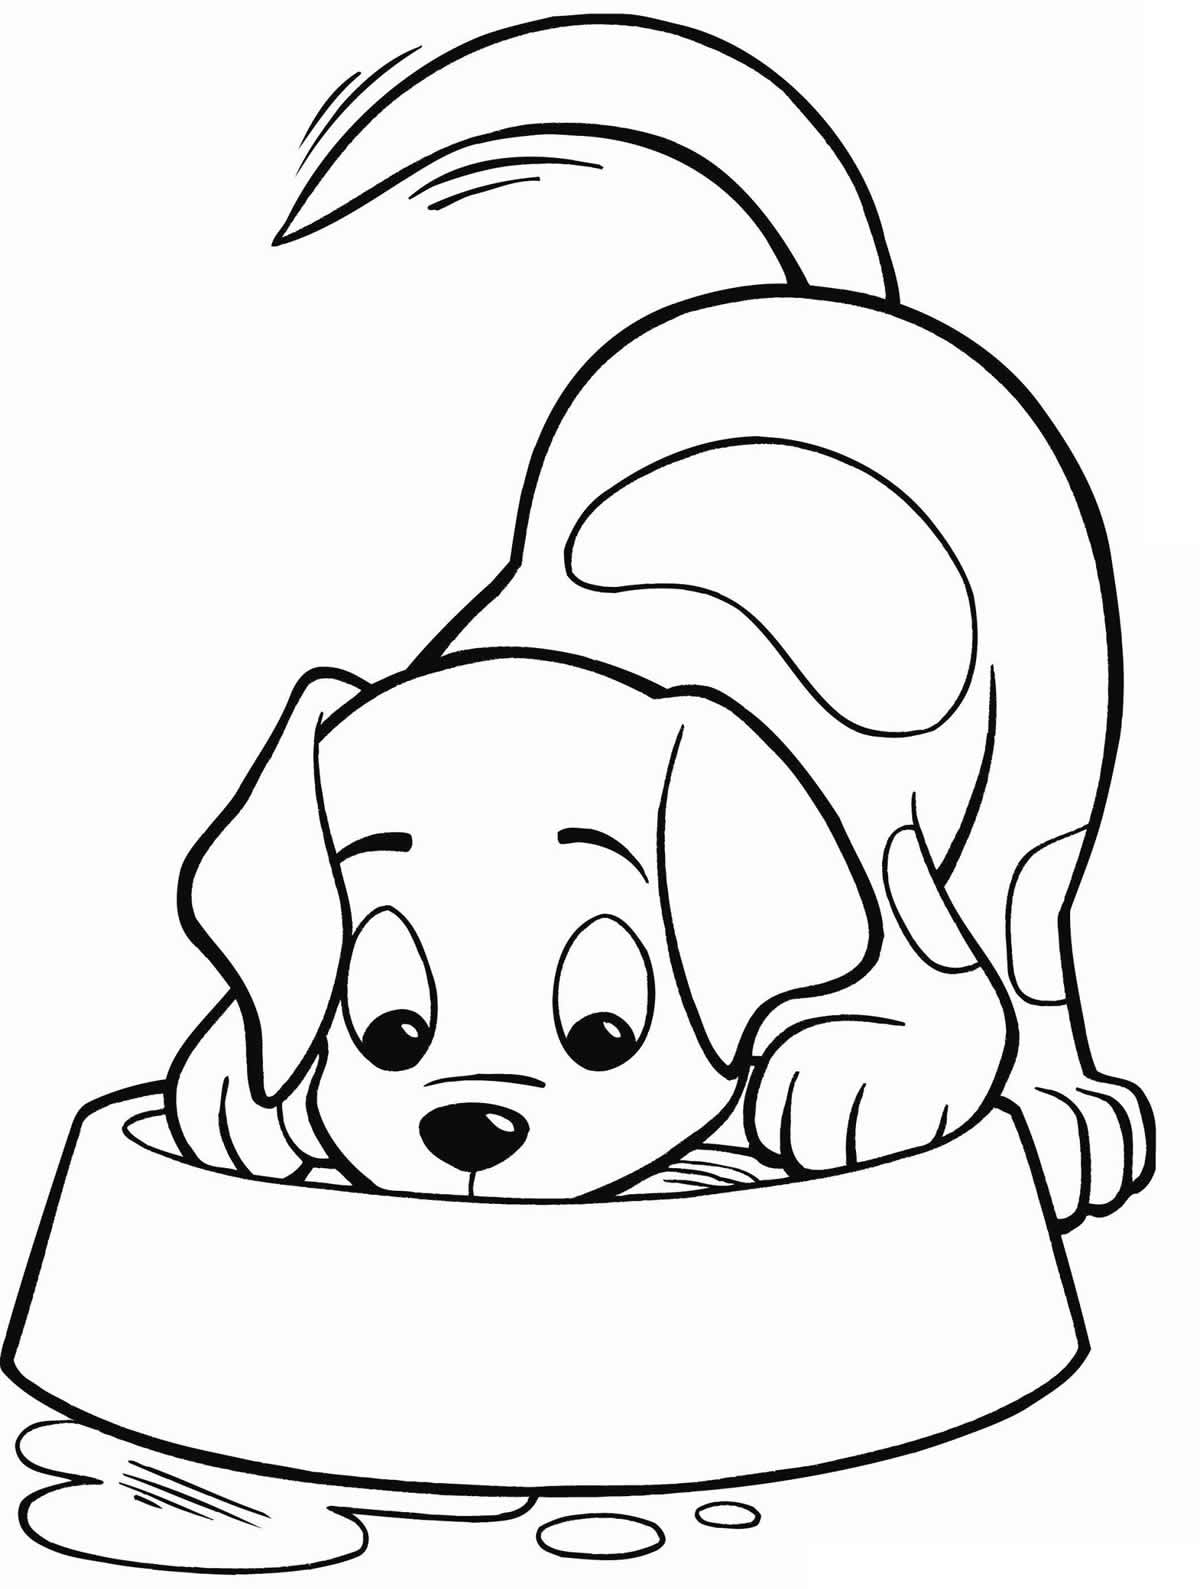 Desenho de Cachorro feliz para Colorir - Colorir.com